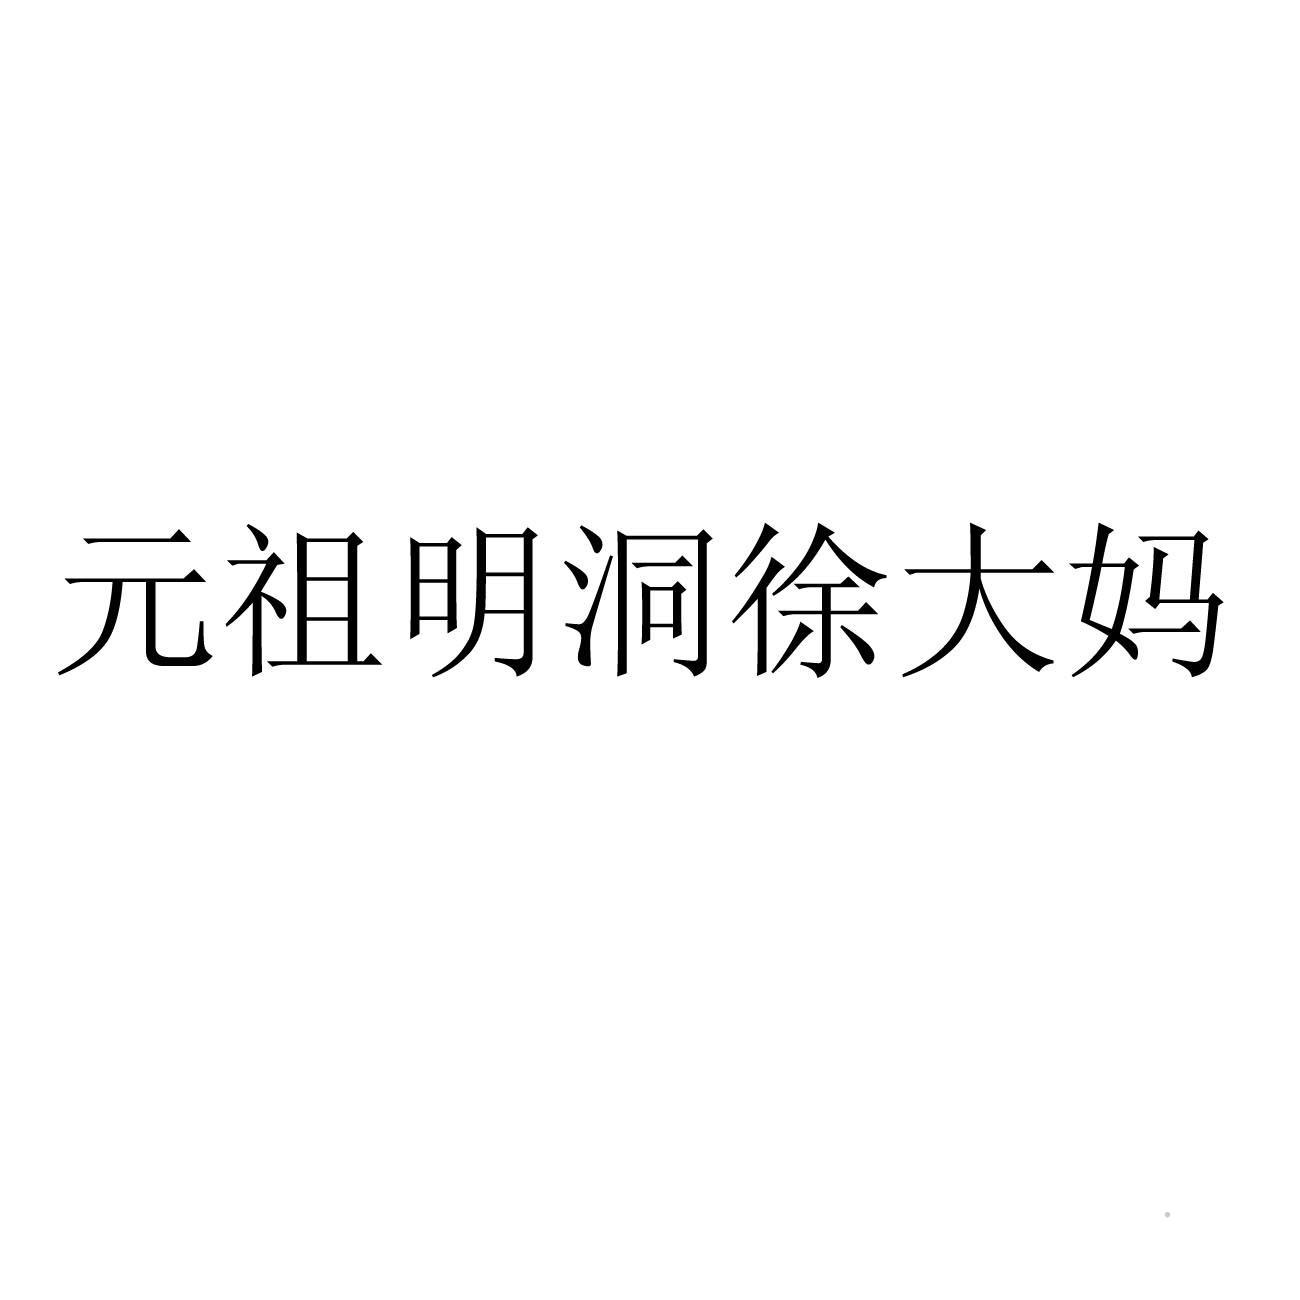 元祖明洞徐大妈logo